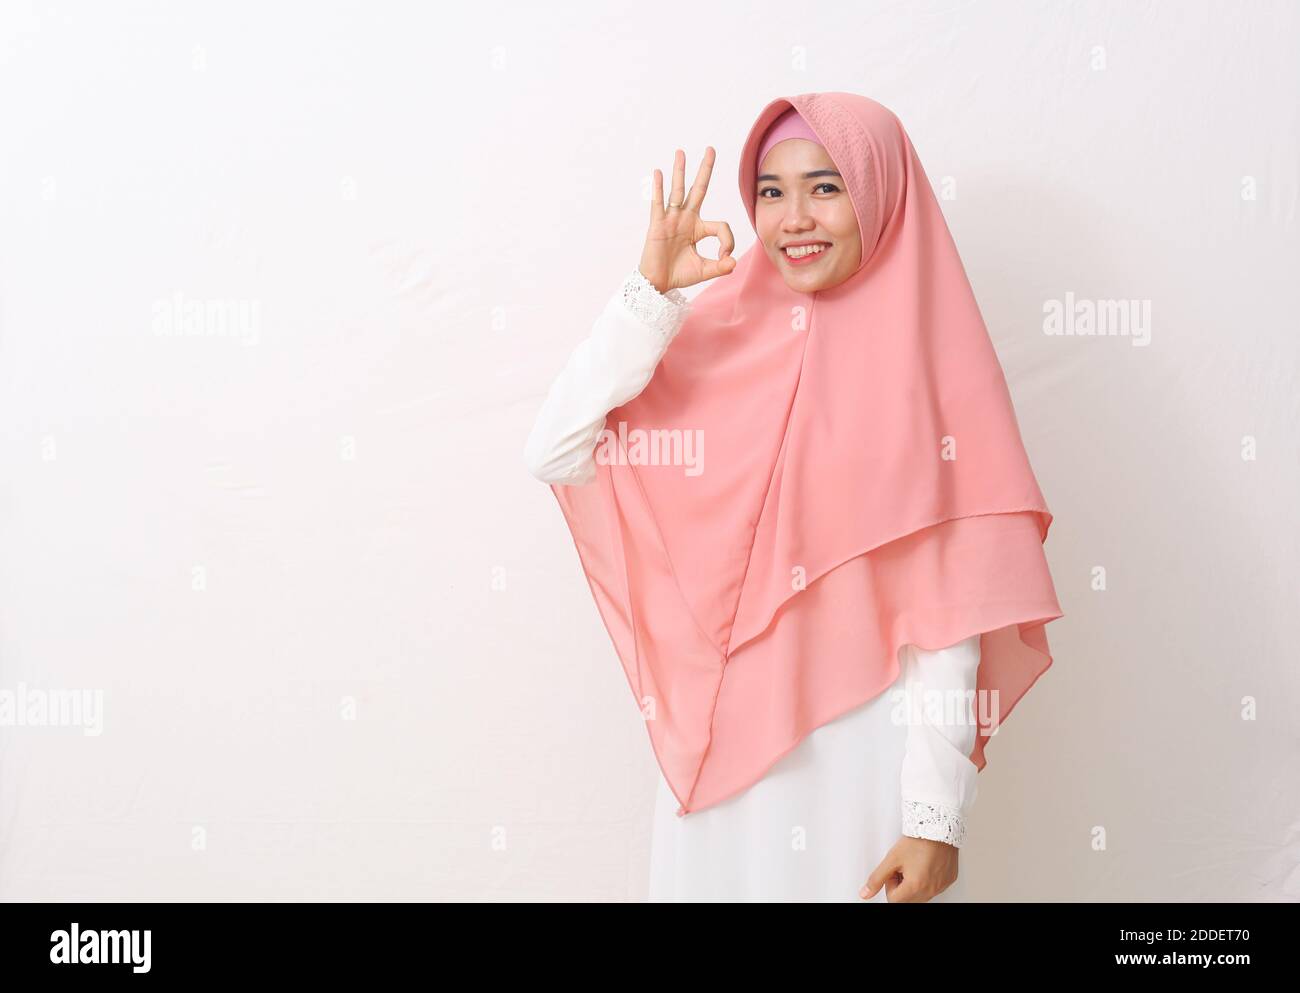 Un ritratto della donna musulmana asiatica felice che indossa un velo o un hijab con i gesti 'okay' della mano. Isolato su sfondo bianco con spazio per la copia Foto Stock